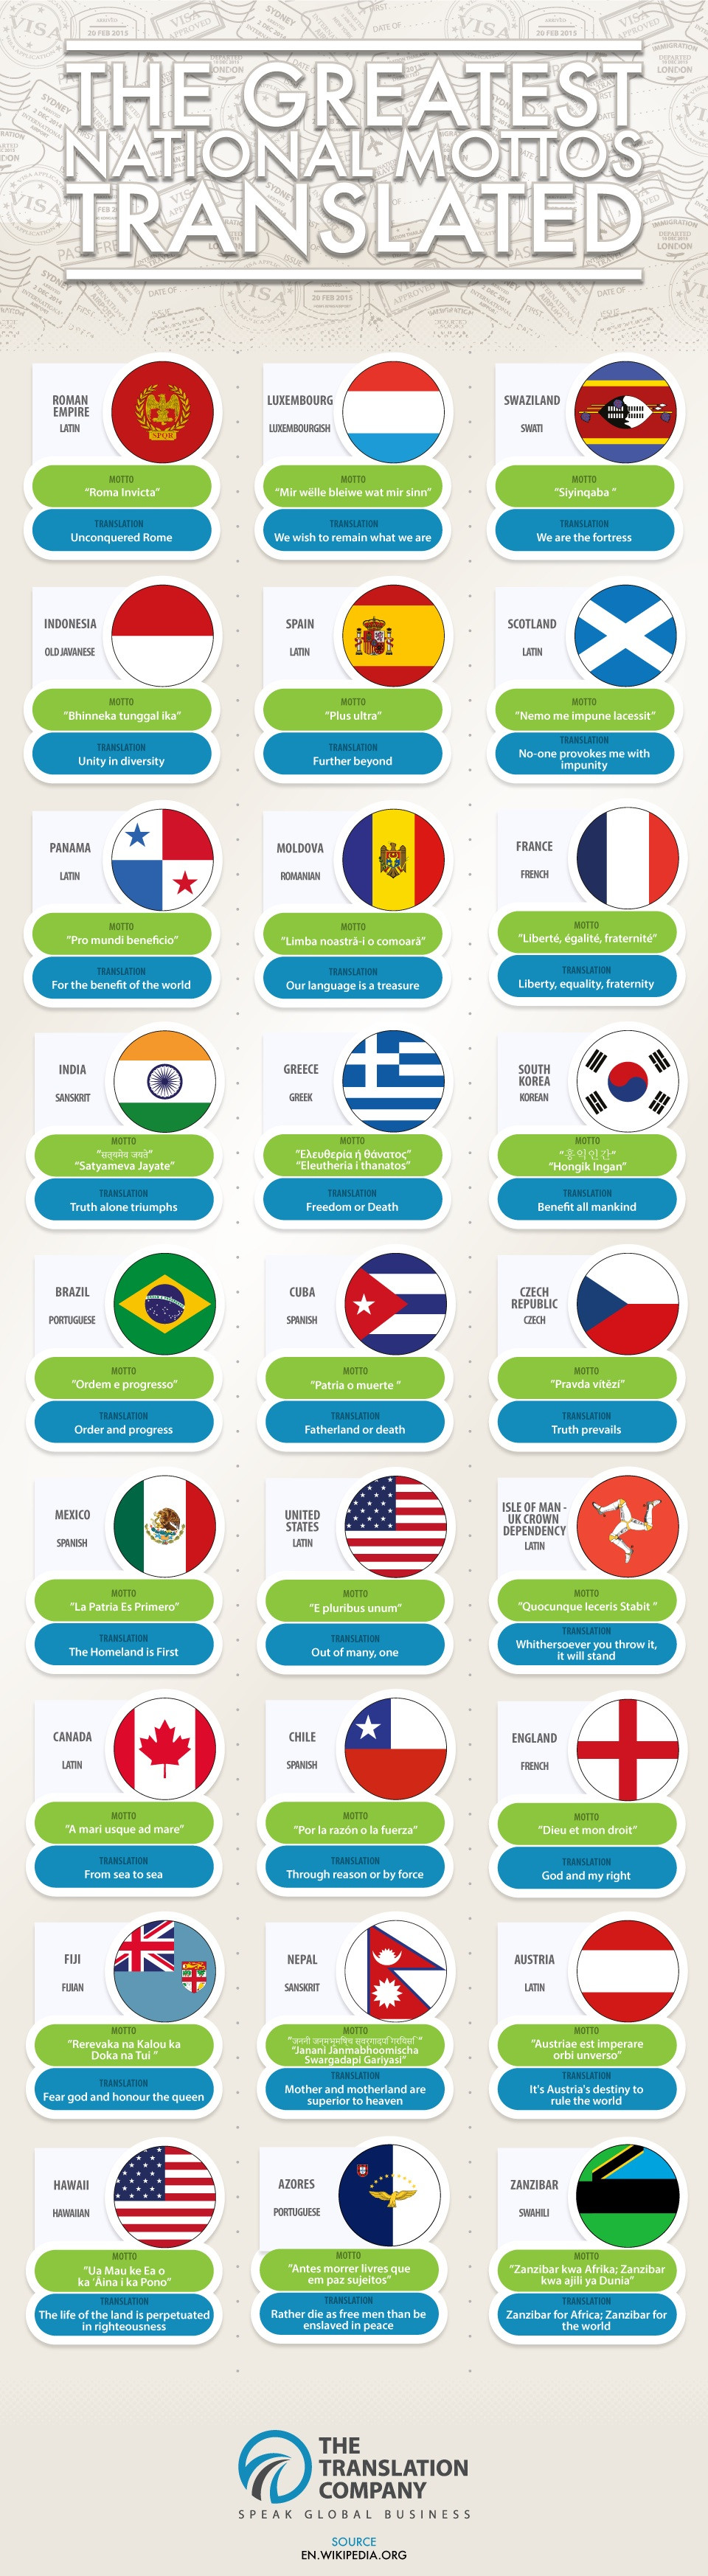 Τα εθνικά μότο 27 κρατών και τι σημαίνουν [ΒΙΝΤΕΟ]